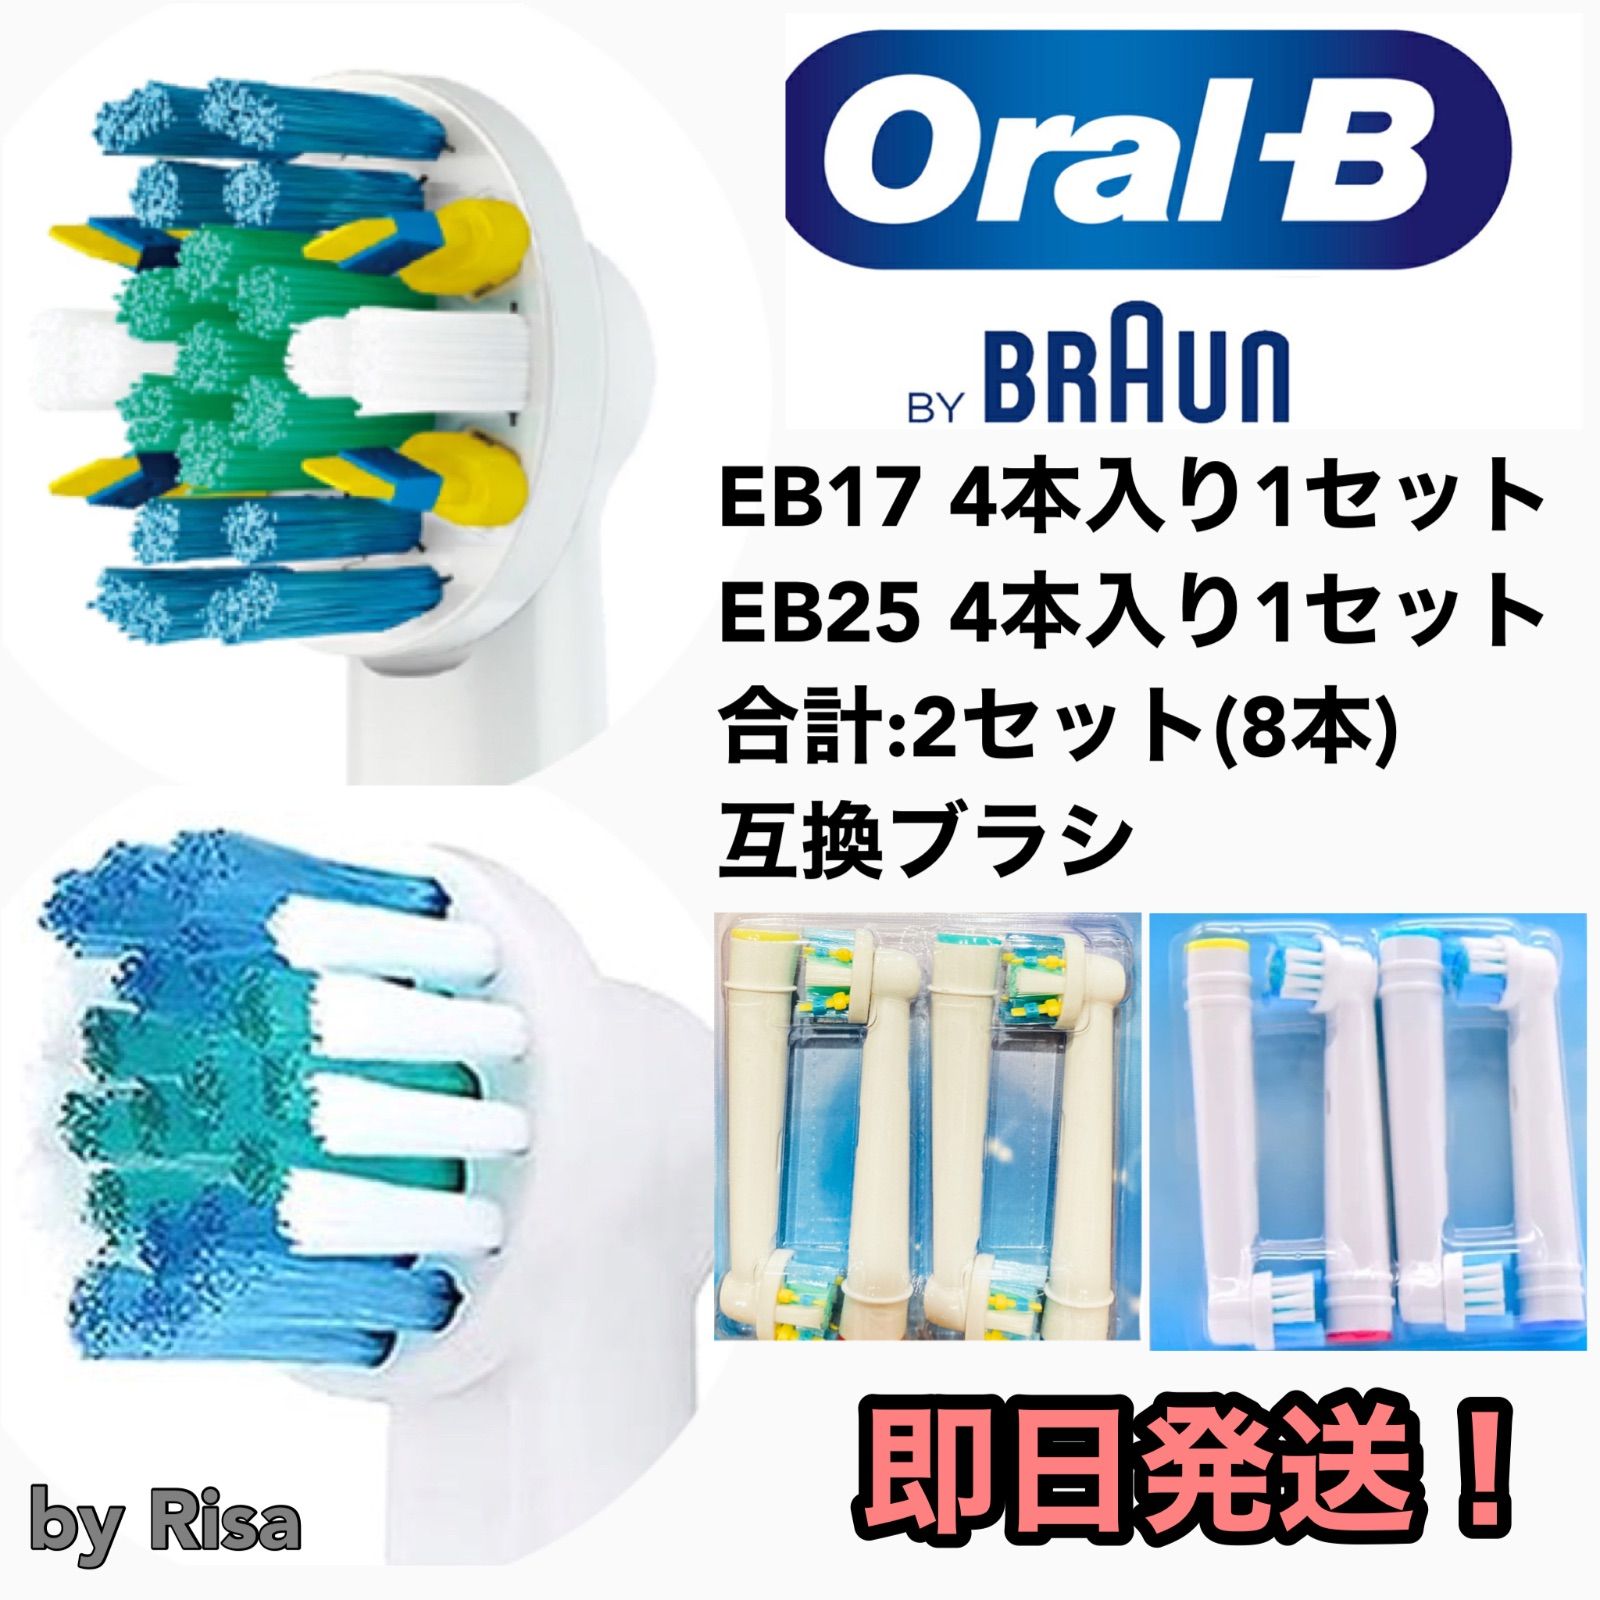 有名ブランド オーラルb Oralb 電動歯ブラシ 替えブラシ歯間ワイパー付き４本セット